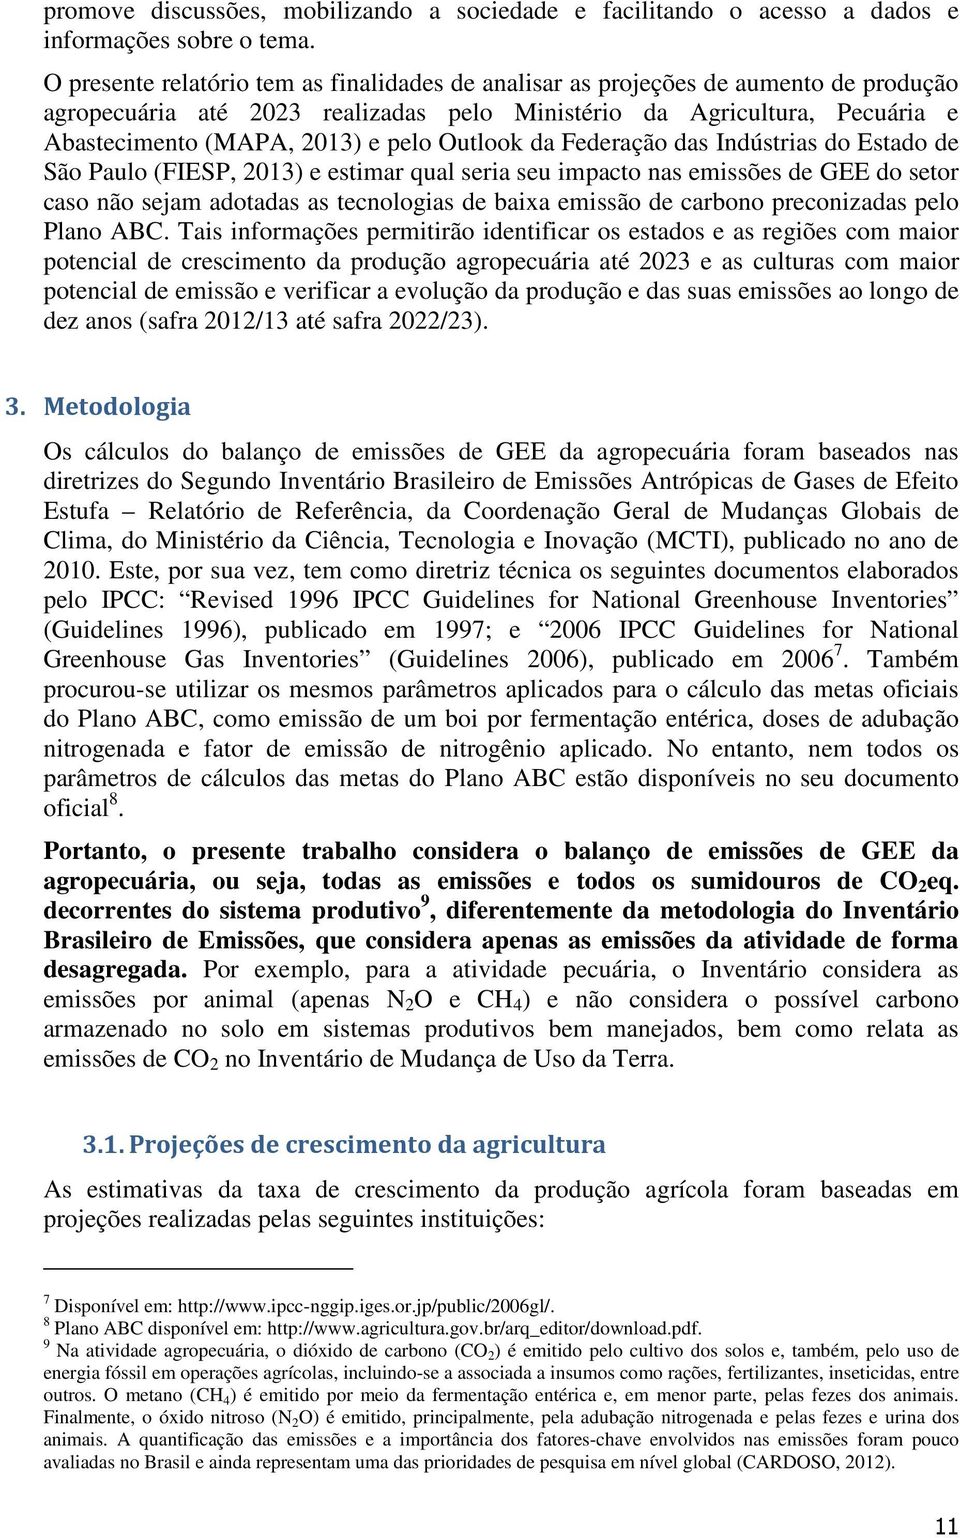 Outlook da Federação das Indústrias do Estado de São Paulo (FIESP, 2013) e estimar qual seria seu impacto nas emissões de GEE do setor caso não sejam adotadas as tecnologias de baixa emissão de